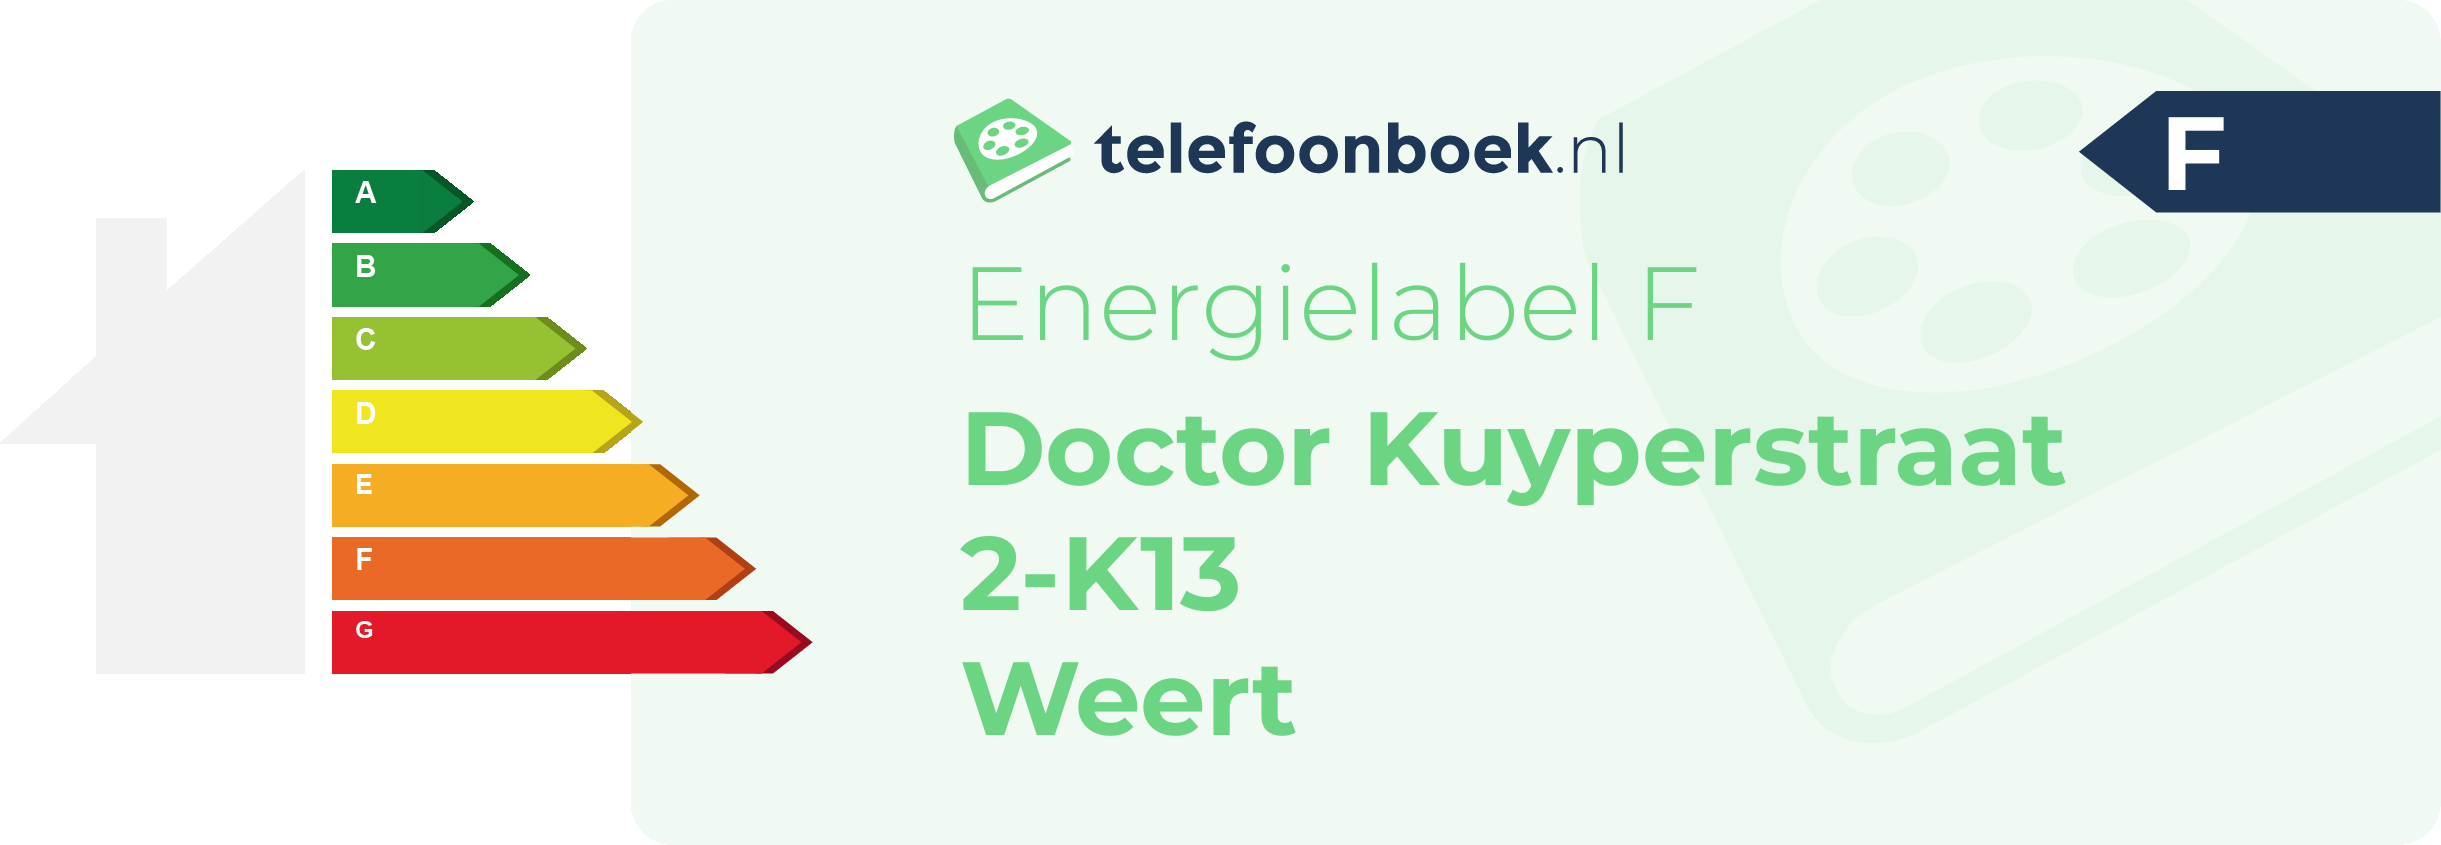 Energielabel Doctor Kuyperstraat 2-K13 Weert